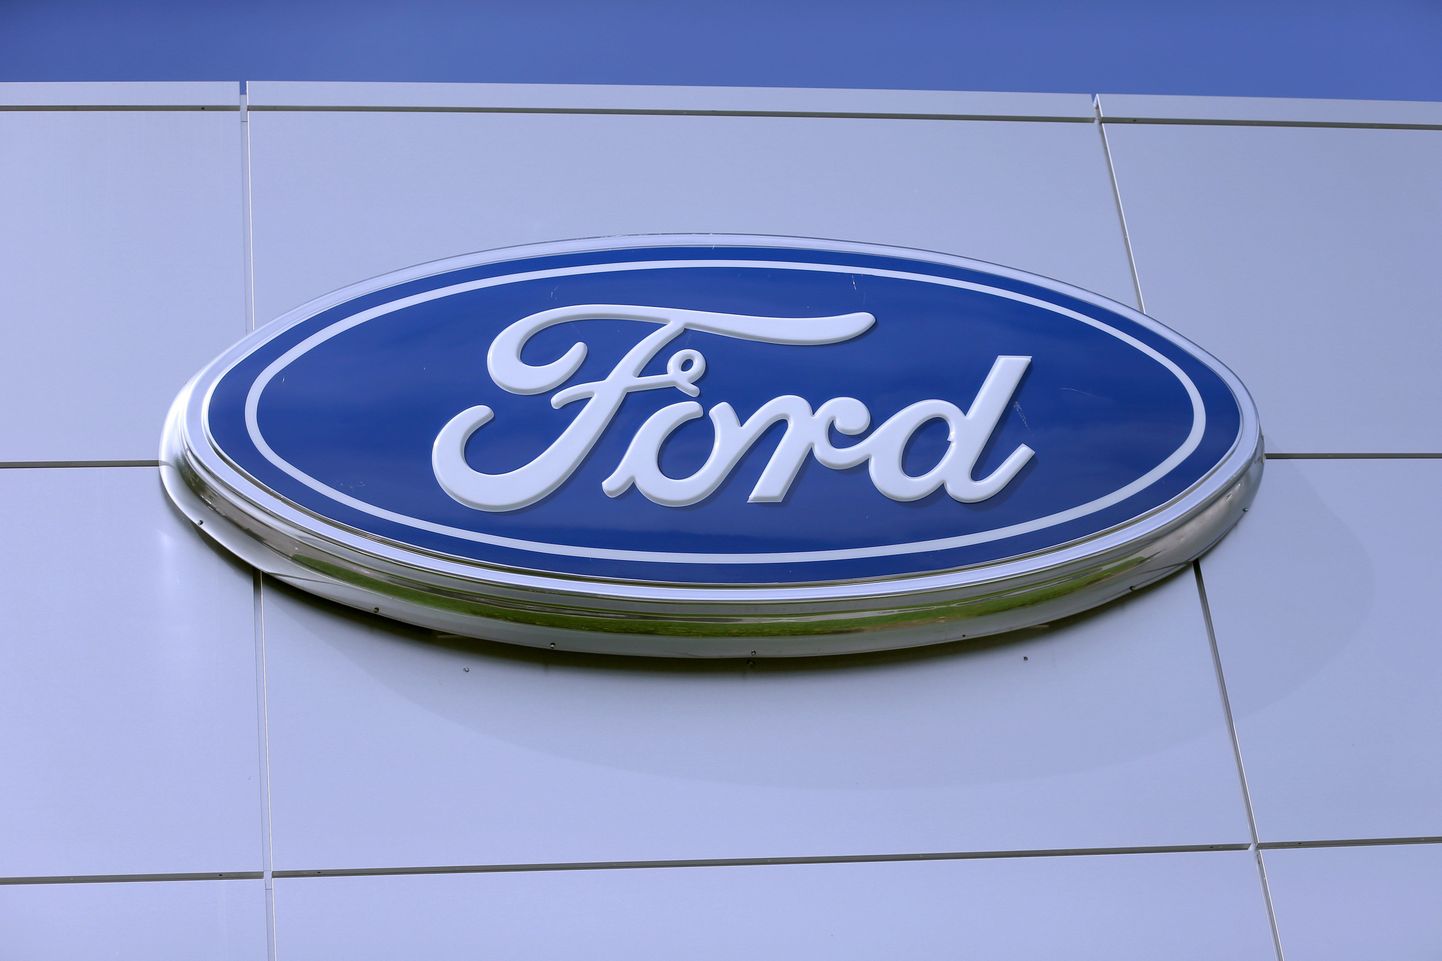 Логотип Ford. Иллюстративное фото.